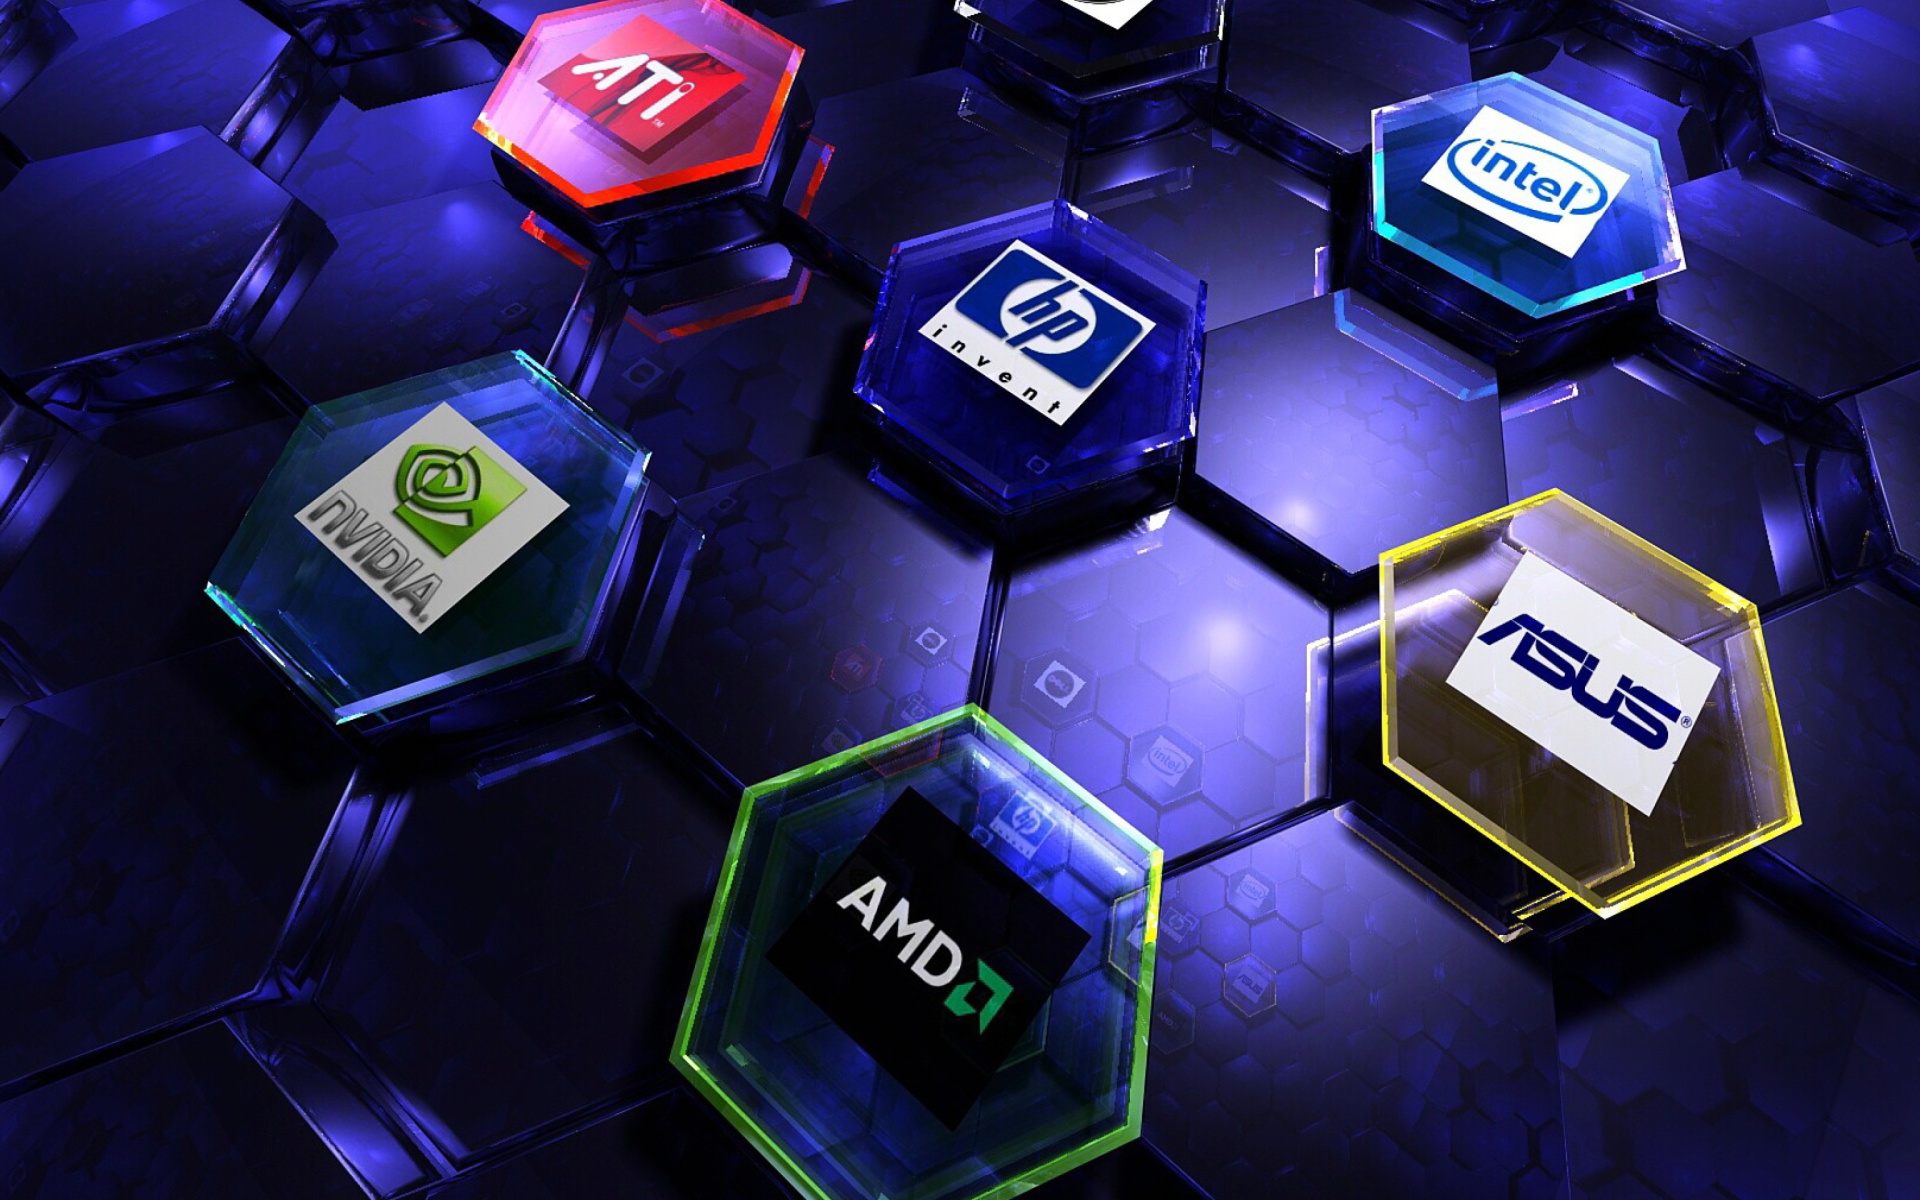 Das Hi-Tech Logos: AMD, HP, Ati, Nvidia, Asus Wallpaper 1920x1200